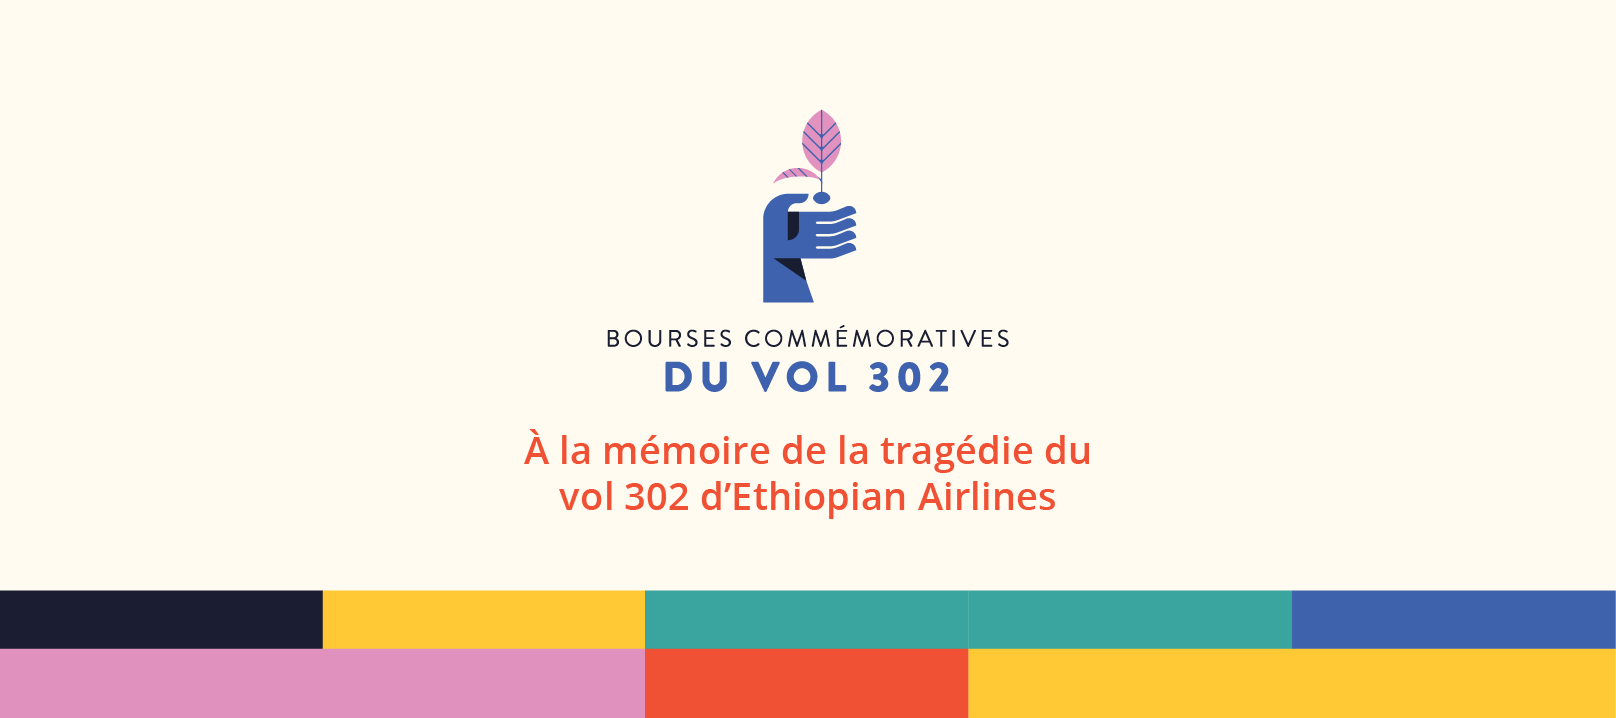 "Bourses commémoratives du vol 302: À la mémoire de la tragédie du vol 302 d